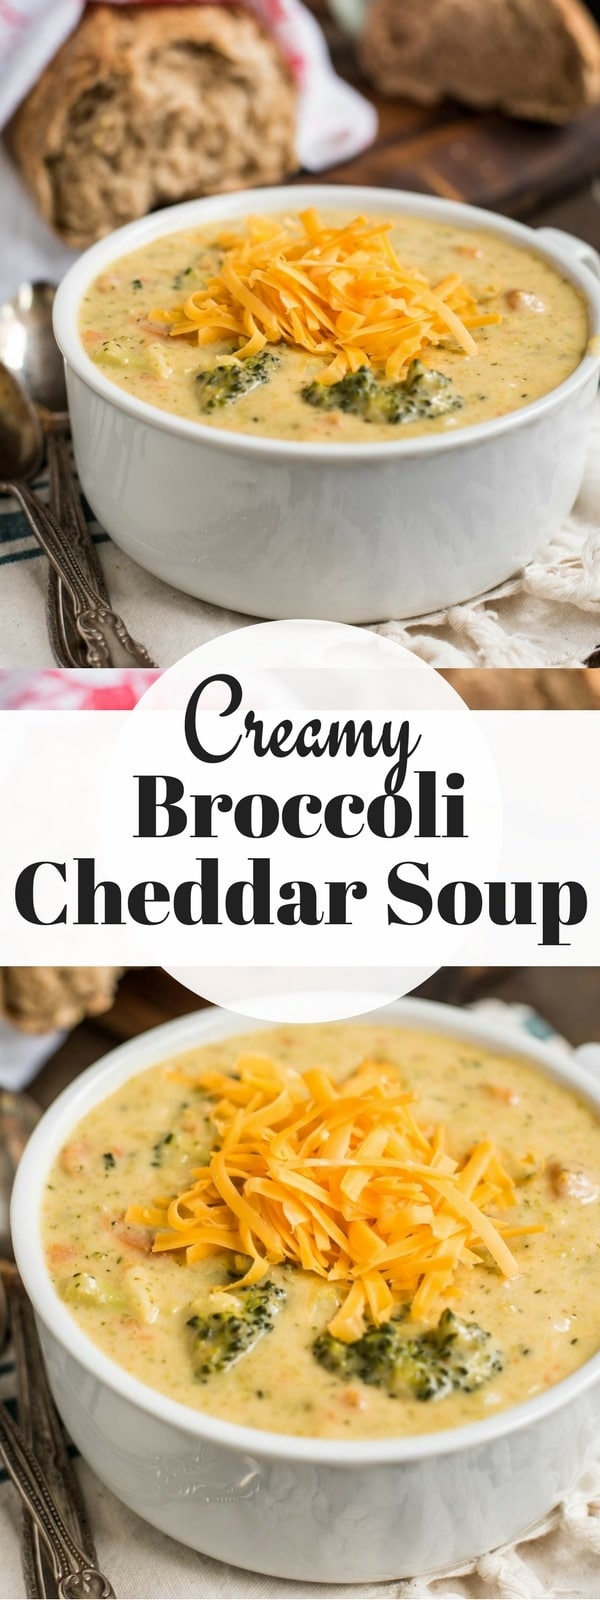 Broccoli Cheddar Soup | NeighborFood